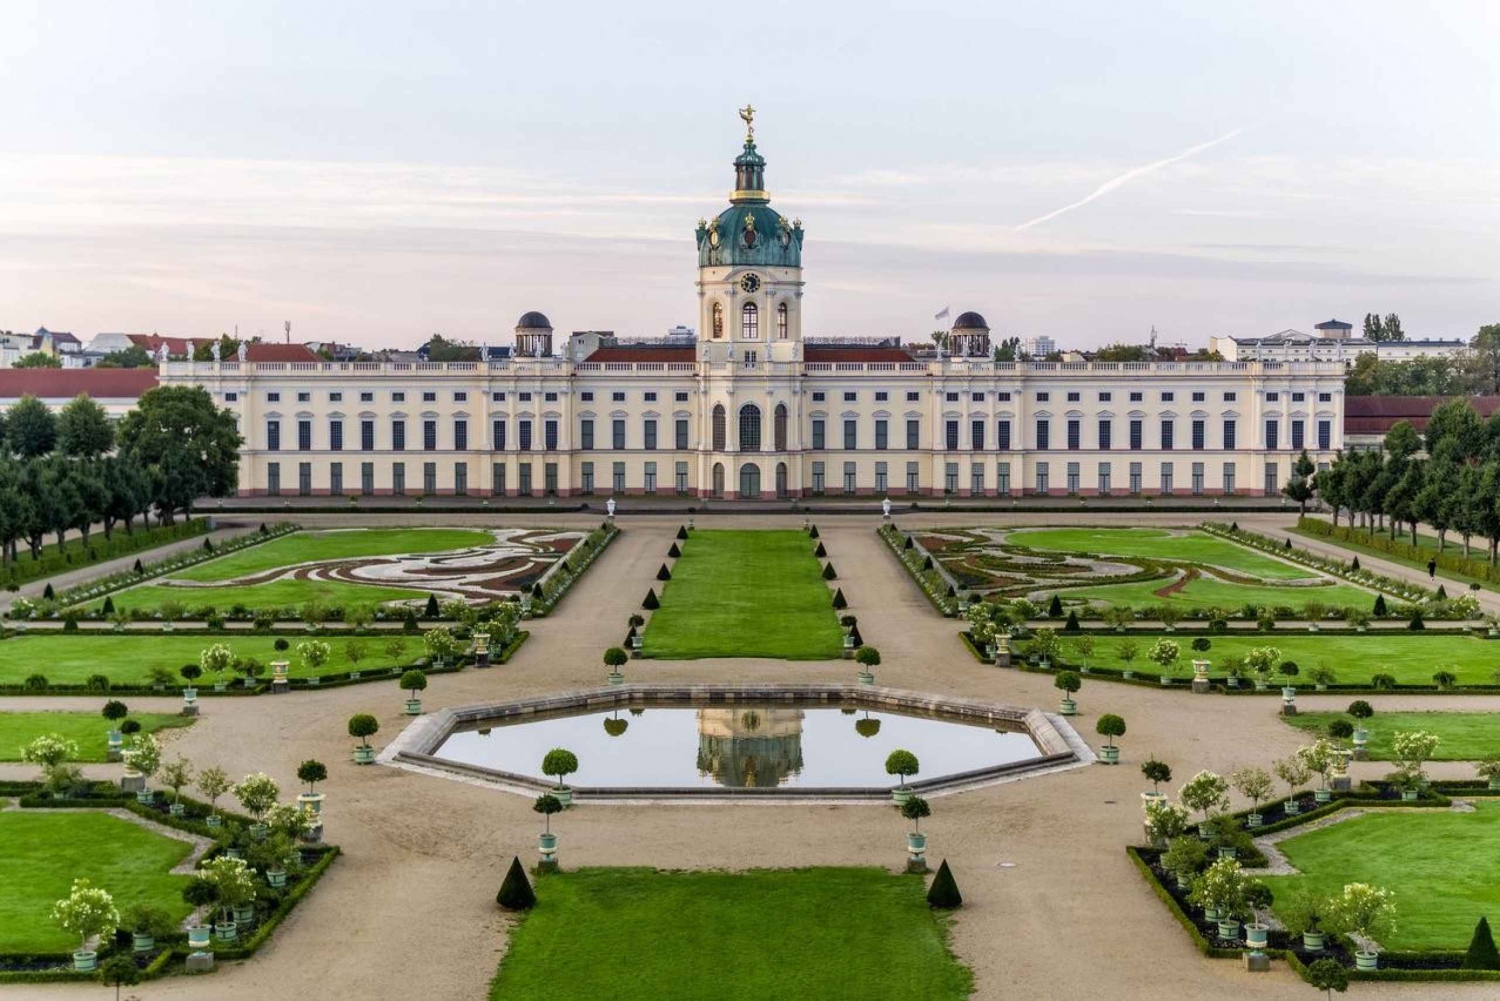 Berlim: Bilhete de entrada para o Palácio de Charlottenburg com o novo pavilhão